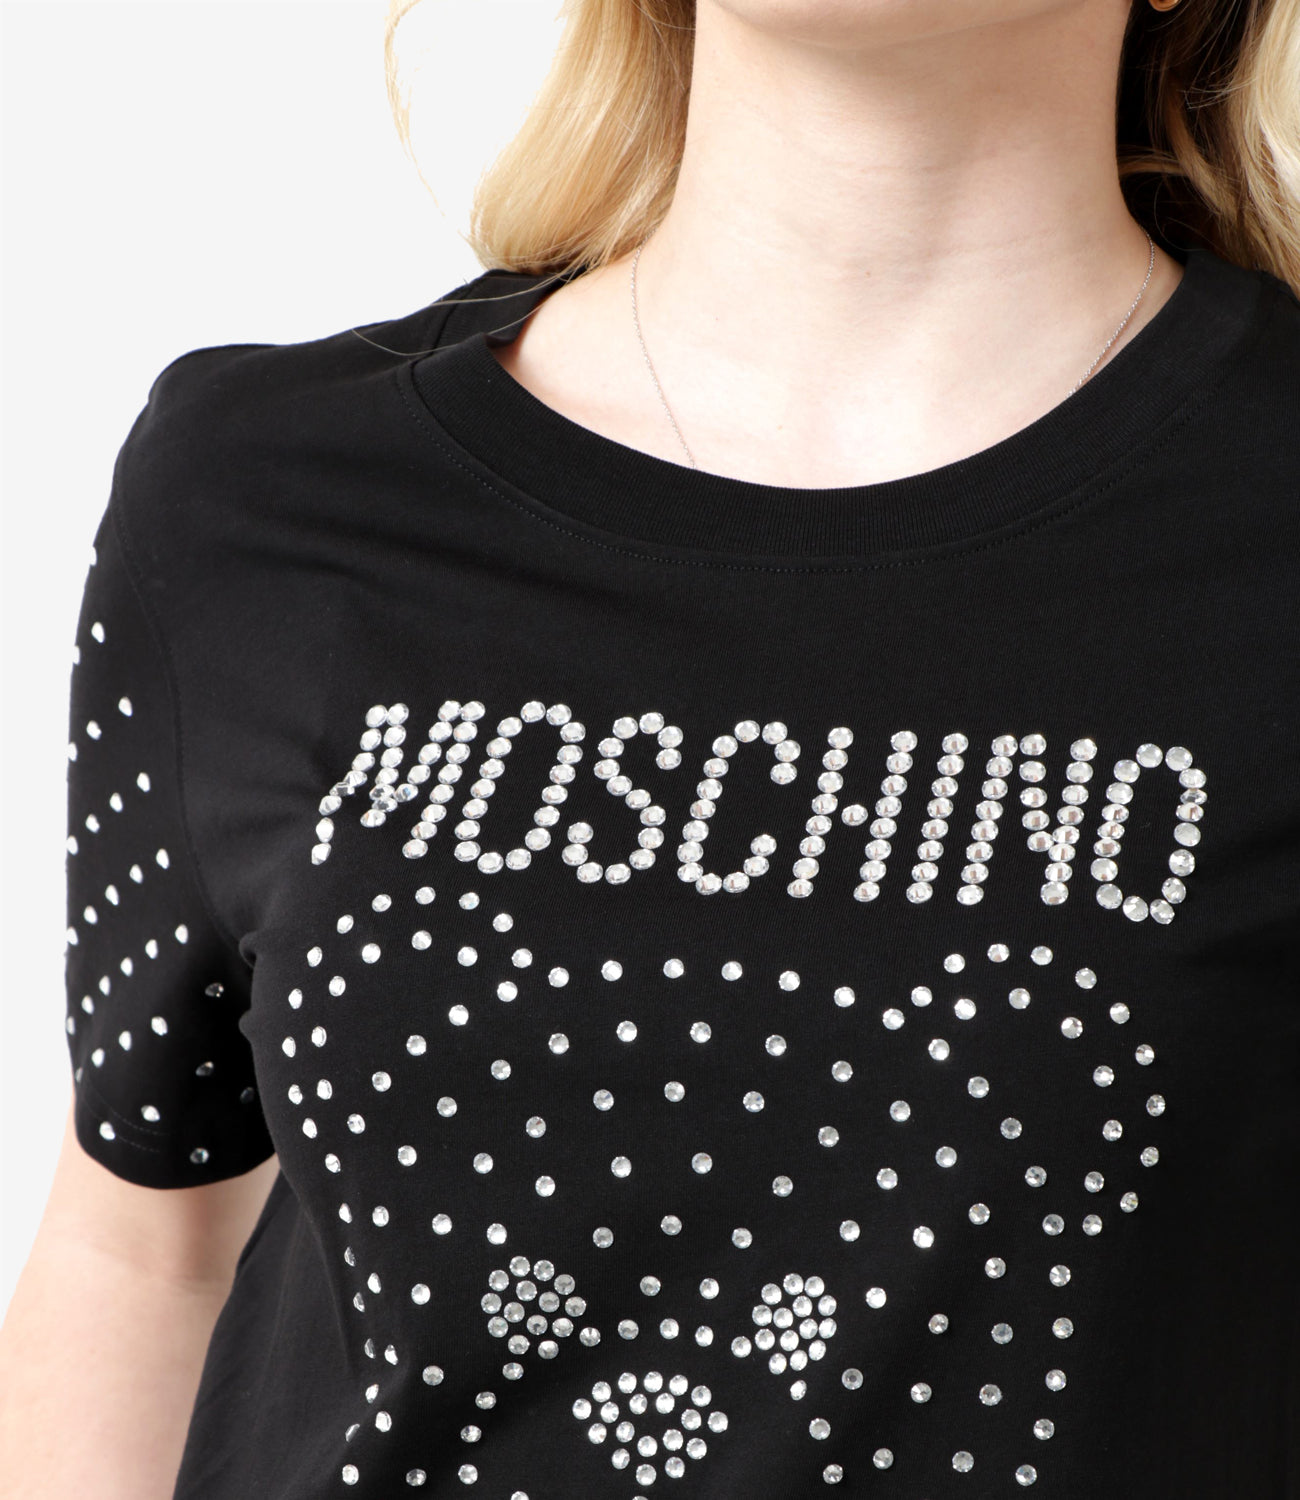 Moschino | T-Shirt nero